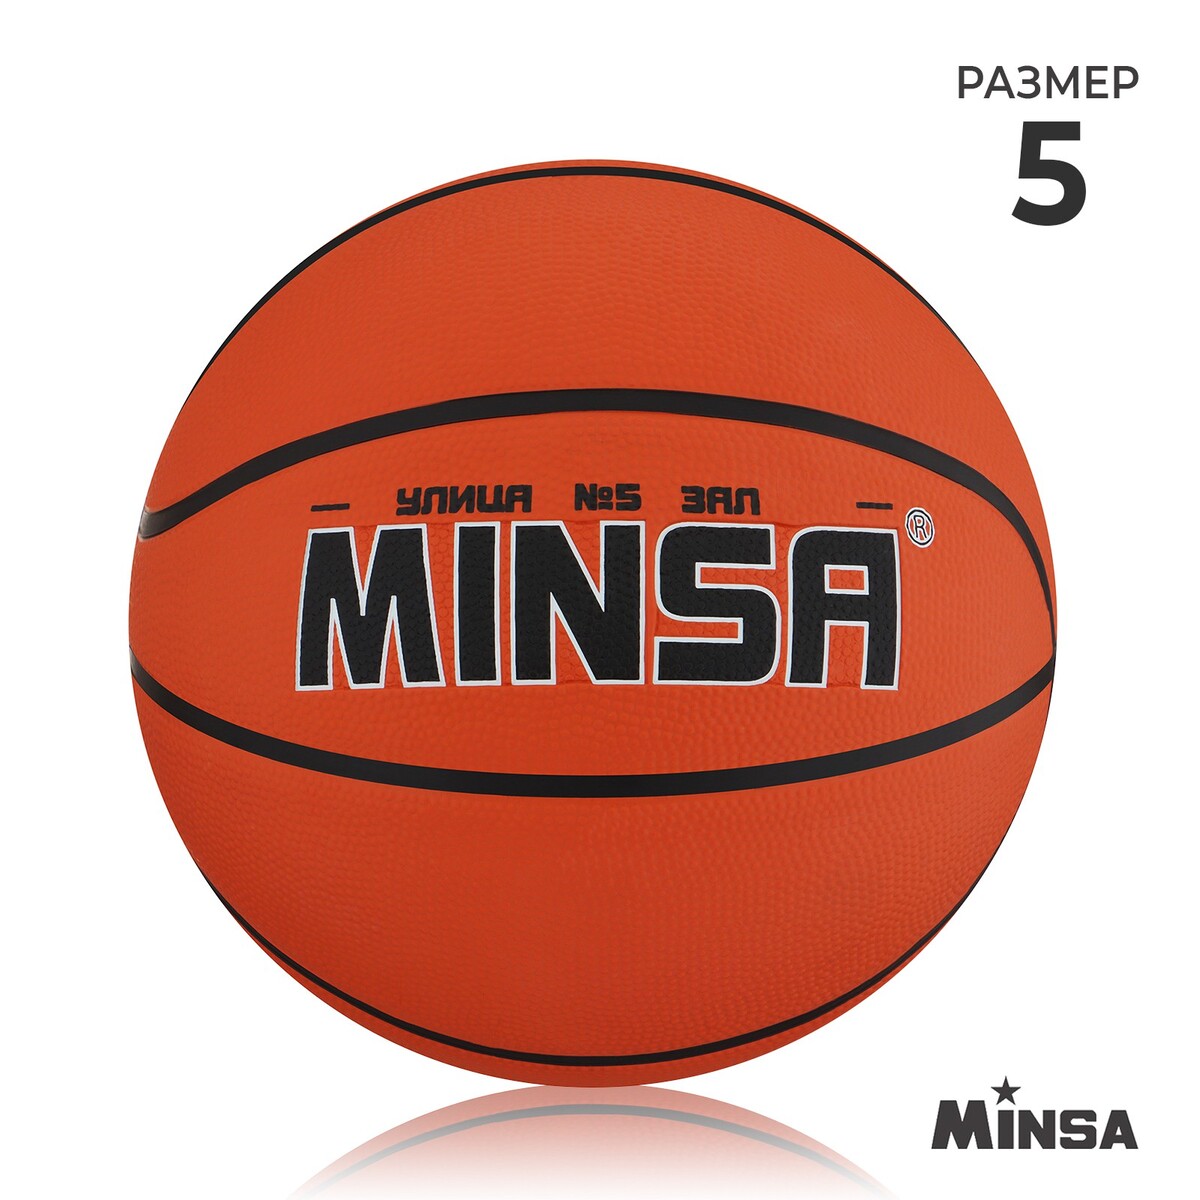 Мяч баскетбольный minsa, пвх, клееный, 8 панелей, р. 5 мяч баскетбольный molten b7g3800 р 7